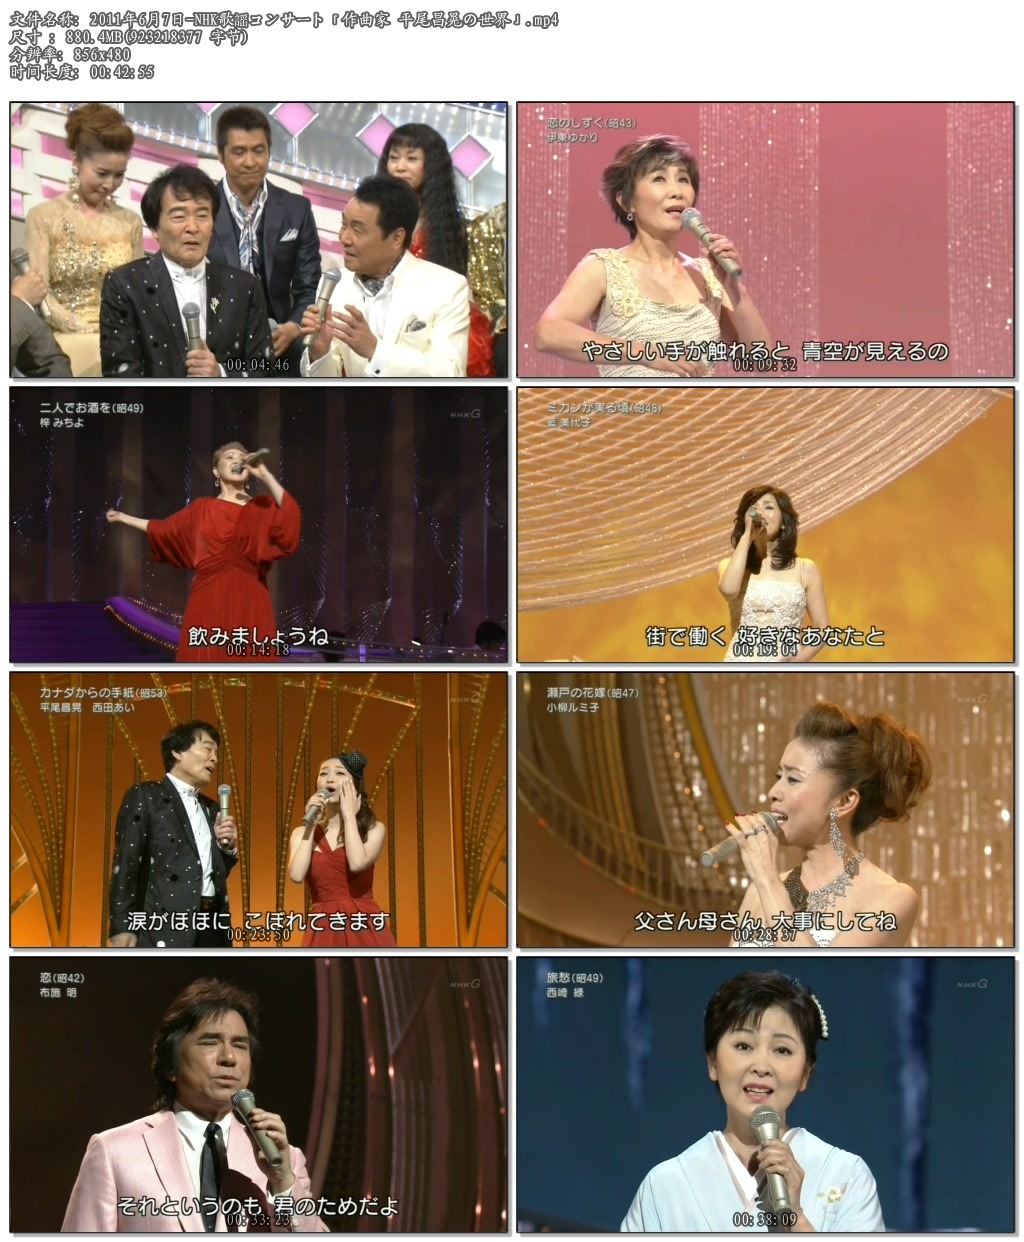 2011年6月7日-NHK歌謡コンサート「作曲家_平尾.jpg